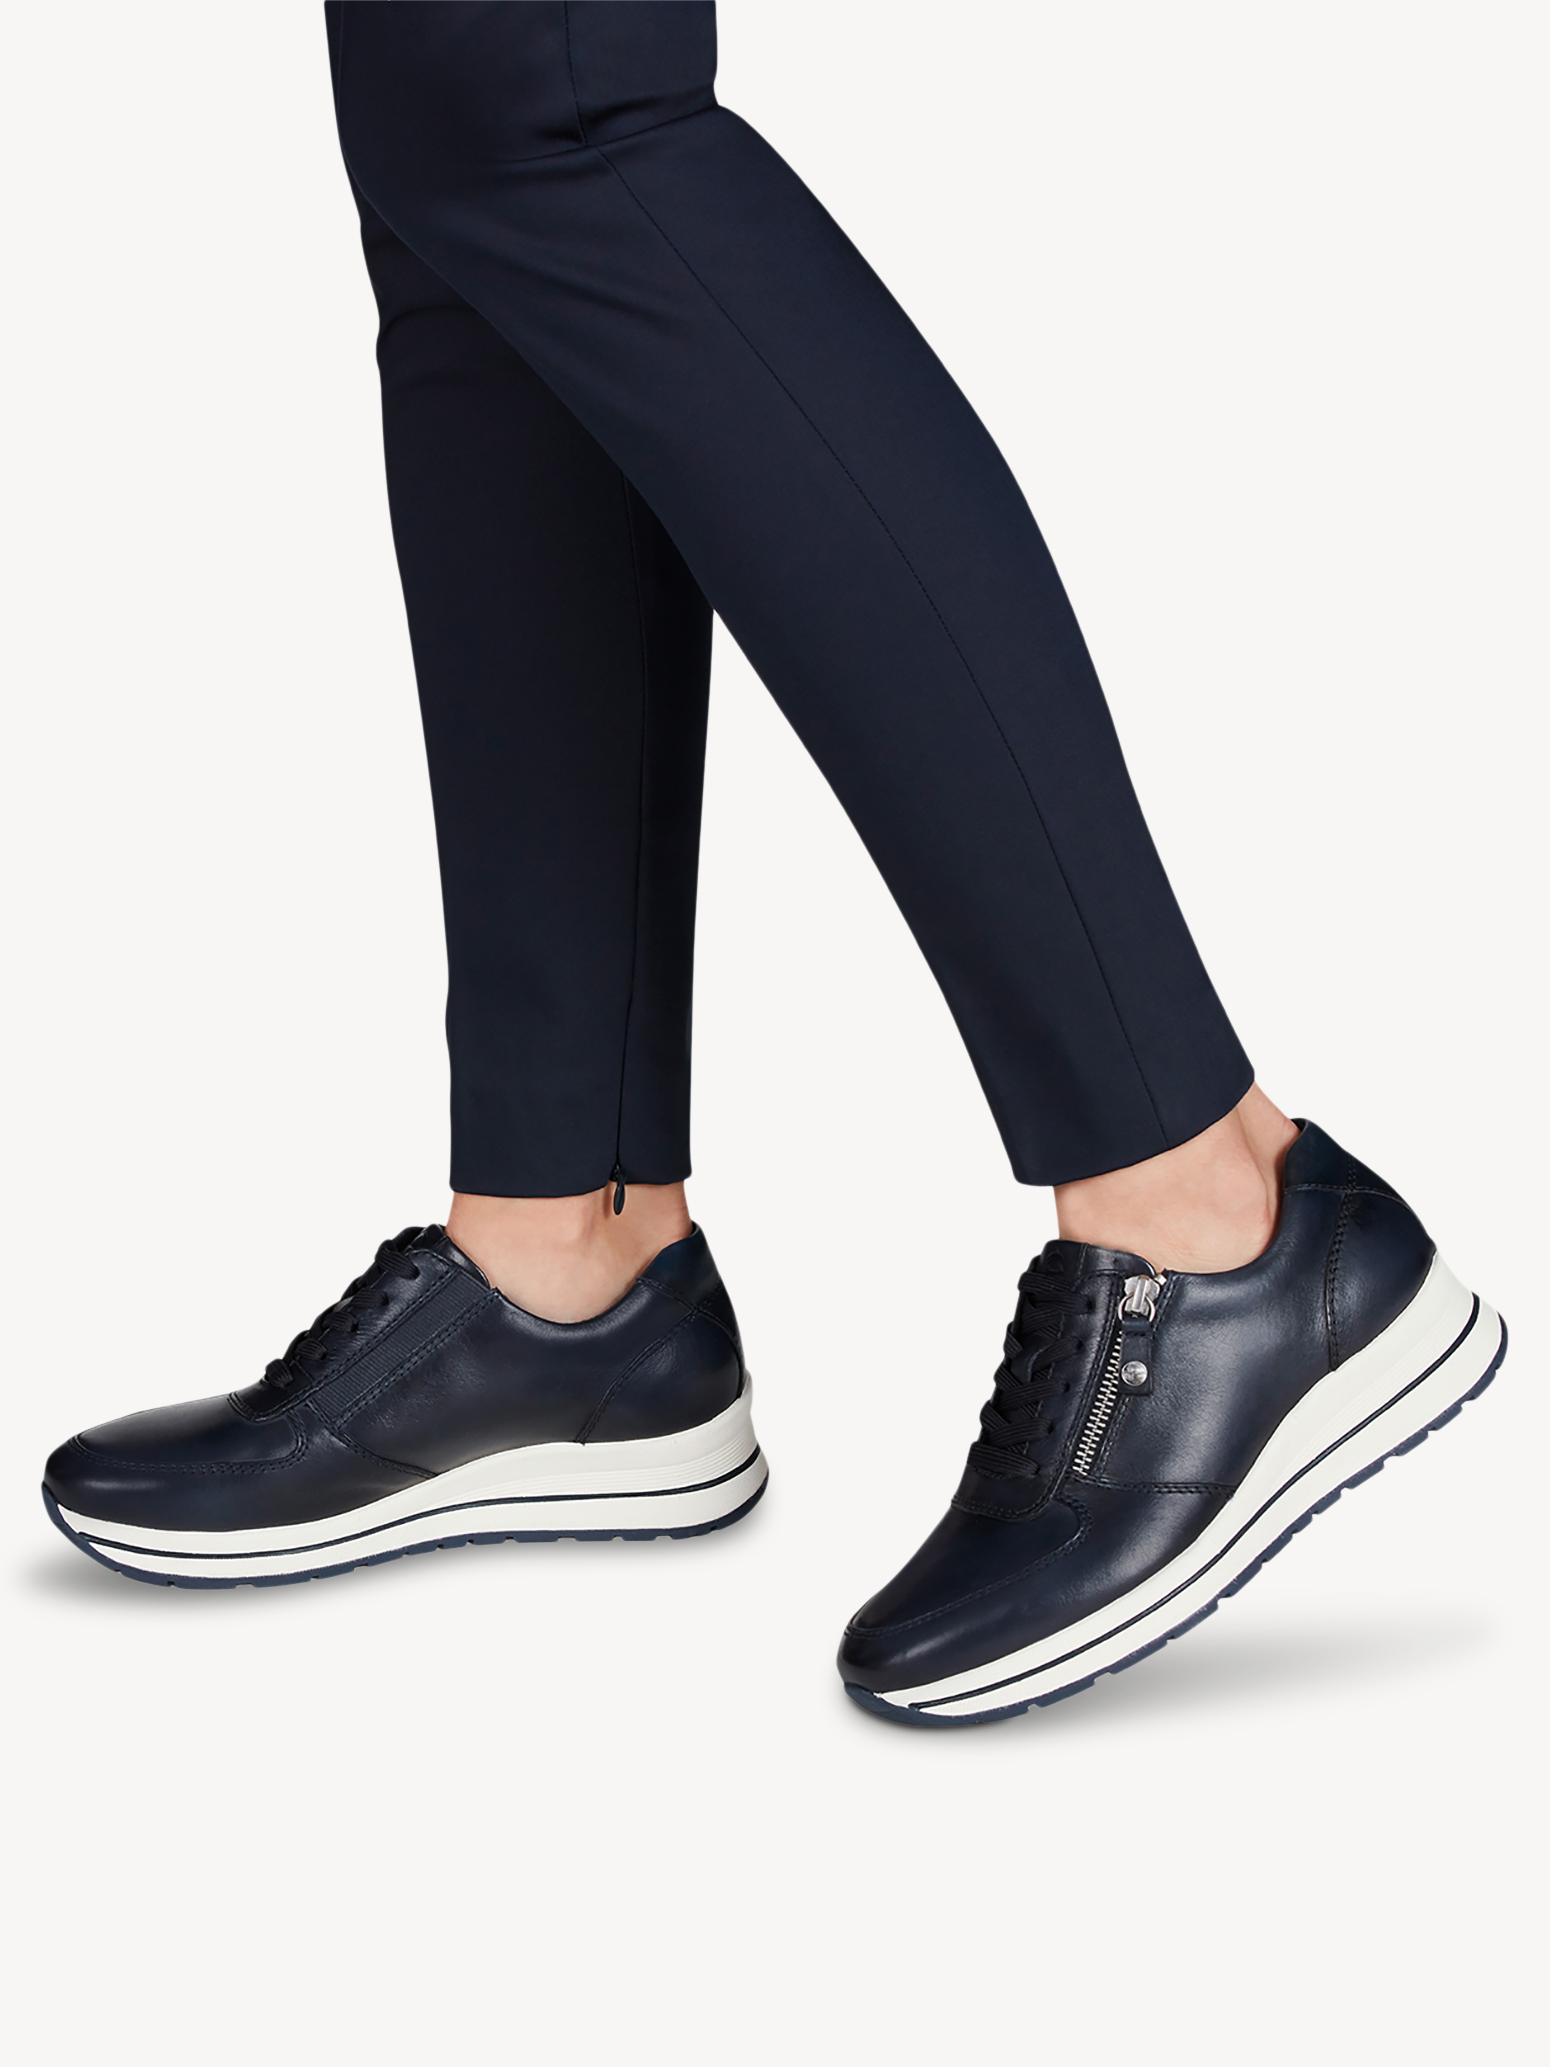 Ботинки на шнурках женские 5 AW20 (синий) - изображение №1